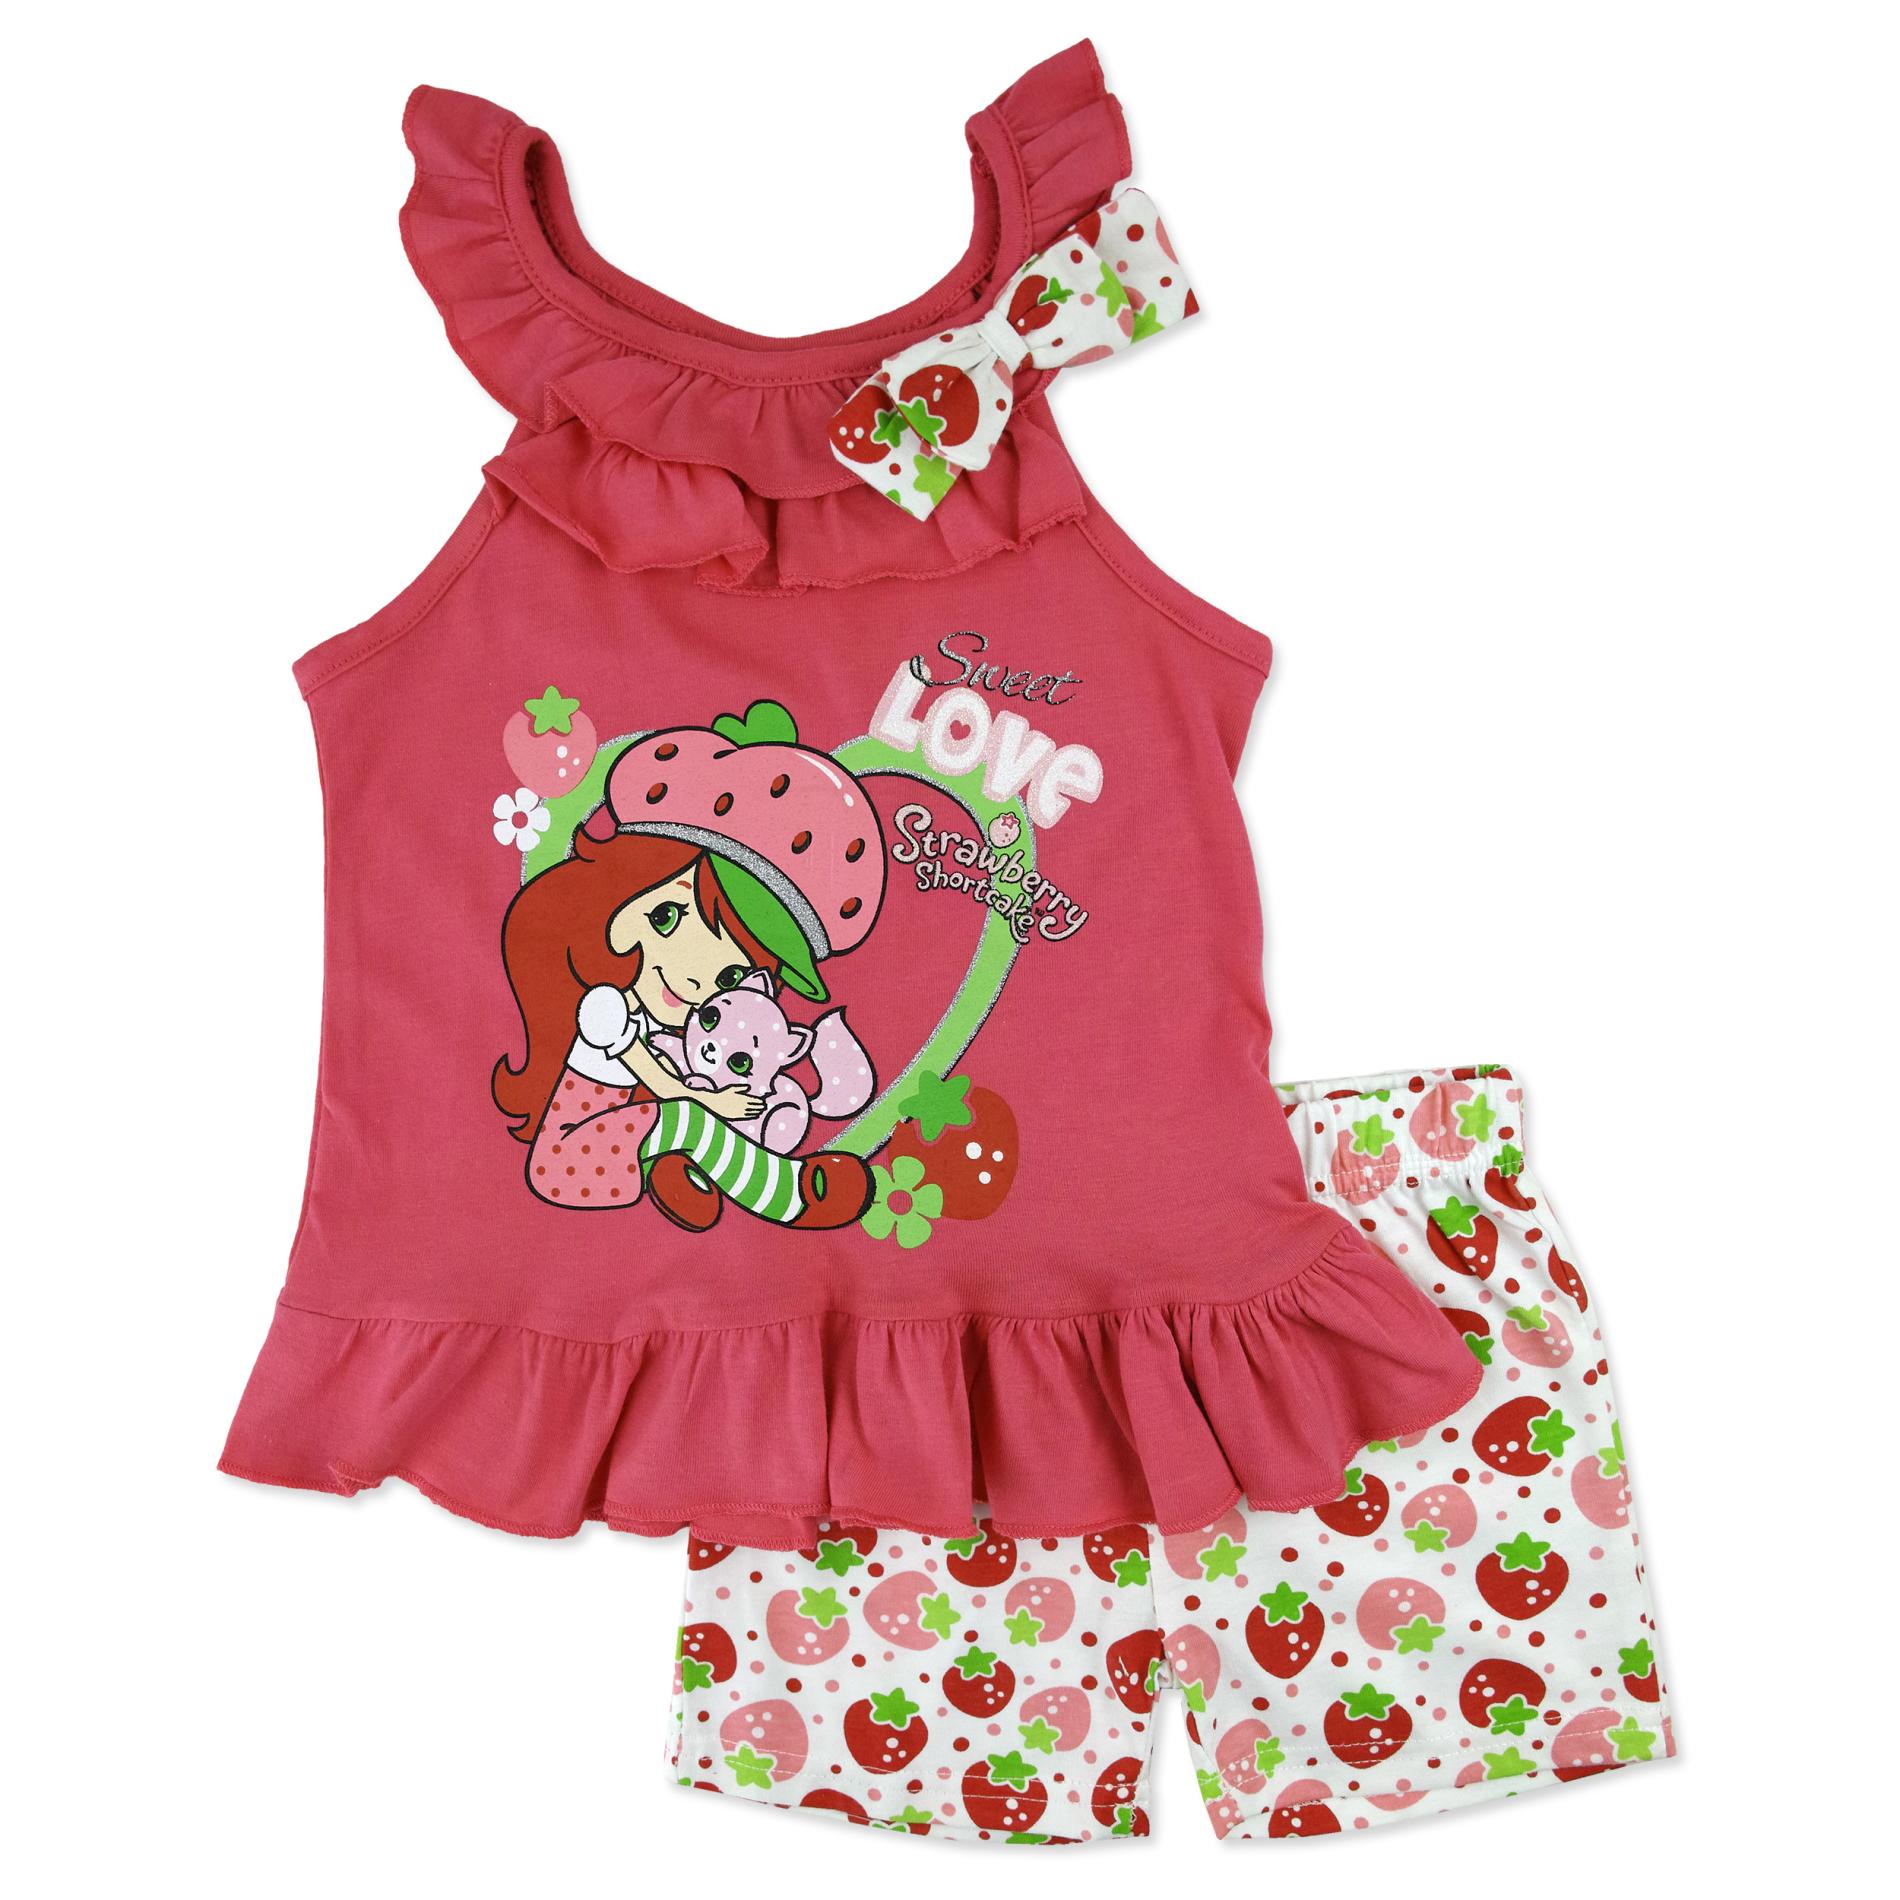 Strawberry Shortcake Toddler Girls' Tank Top & Shorts